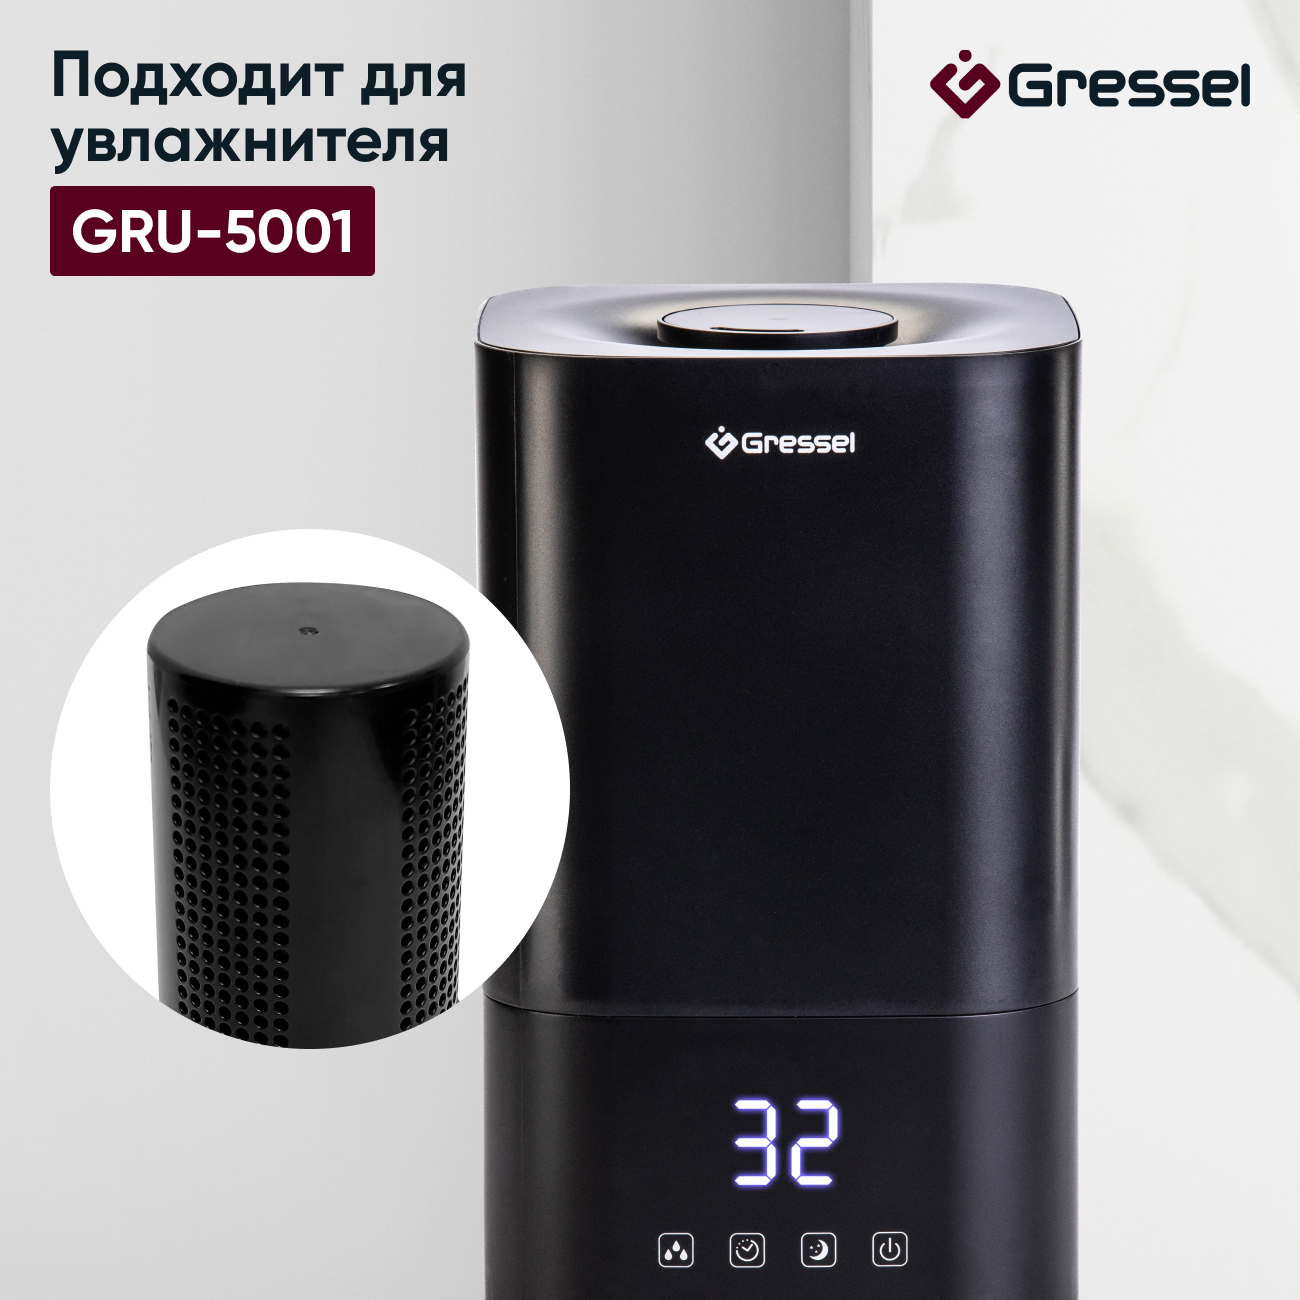 Фильтр увлажнителя воздуха Gressel G-5001 для модели GRU-5001 фильтр ballu для увлажнителя ucc 260